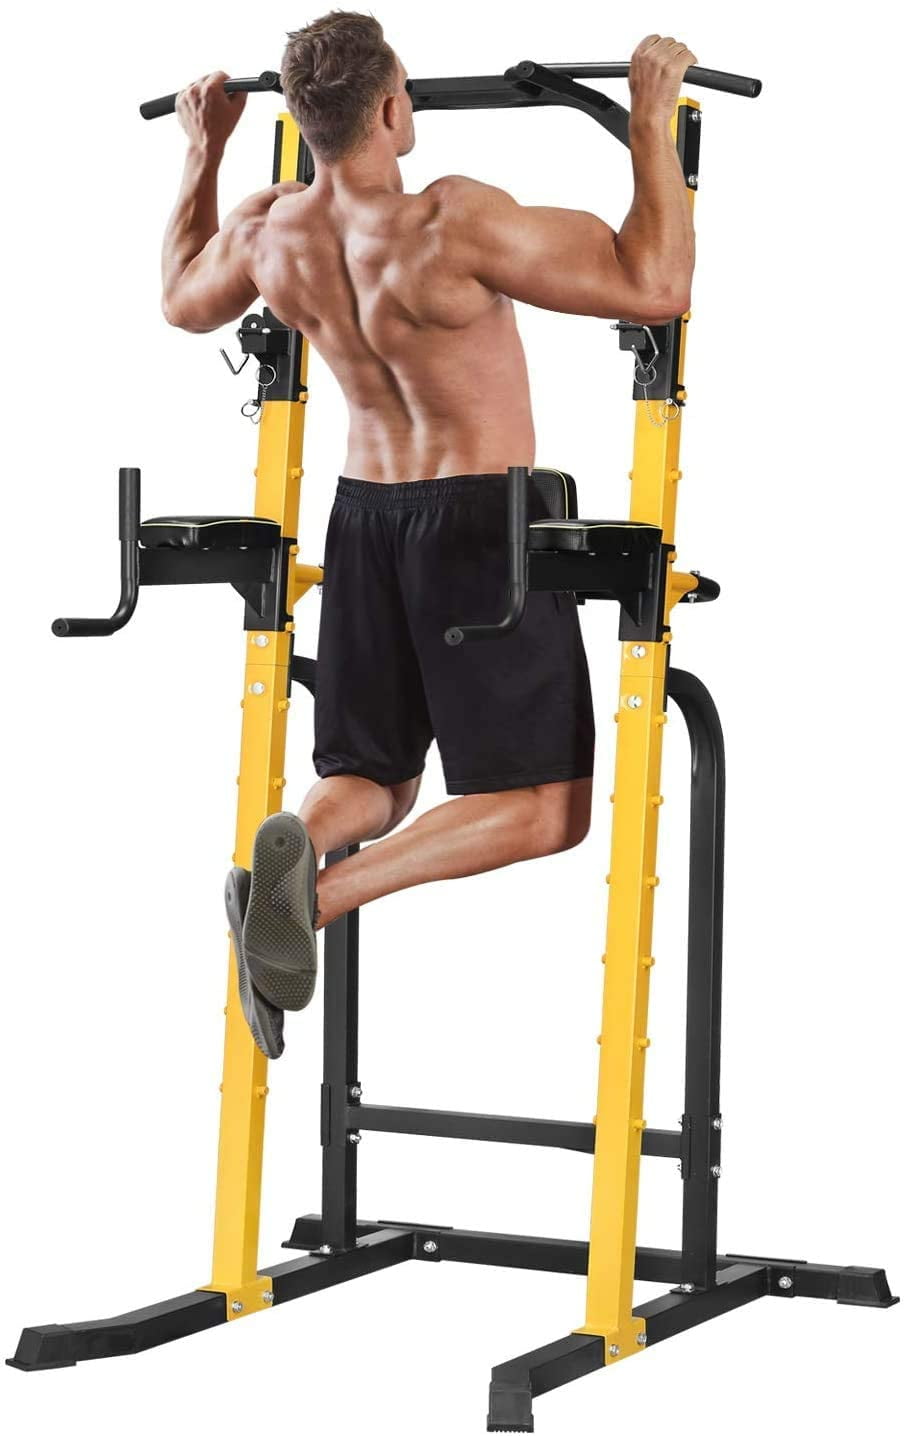 Squat Rack HaltéRophilie Support Pull Up De Musculation Cage De Squat Station DEntraîNement Barre De Traction Traction Bench Press Squat Equipment